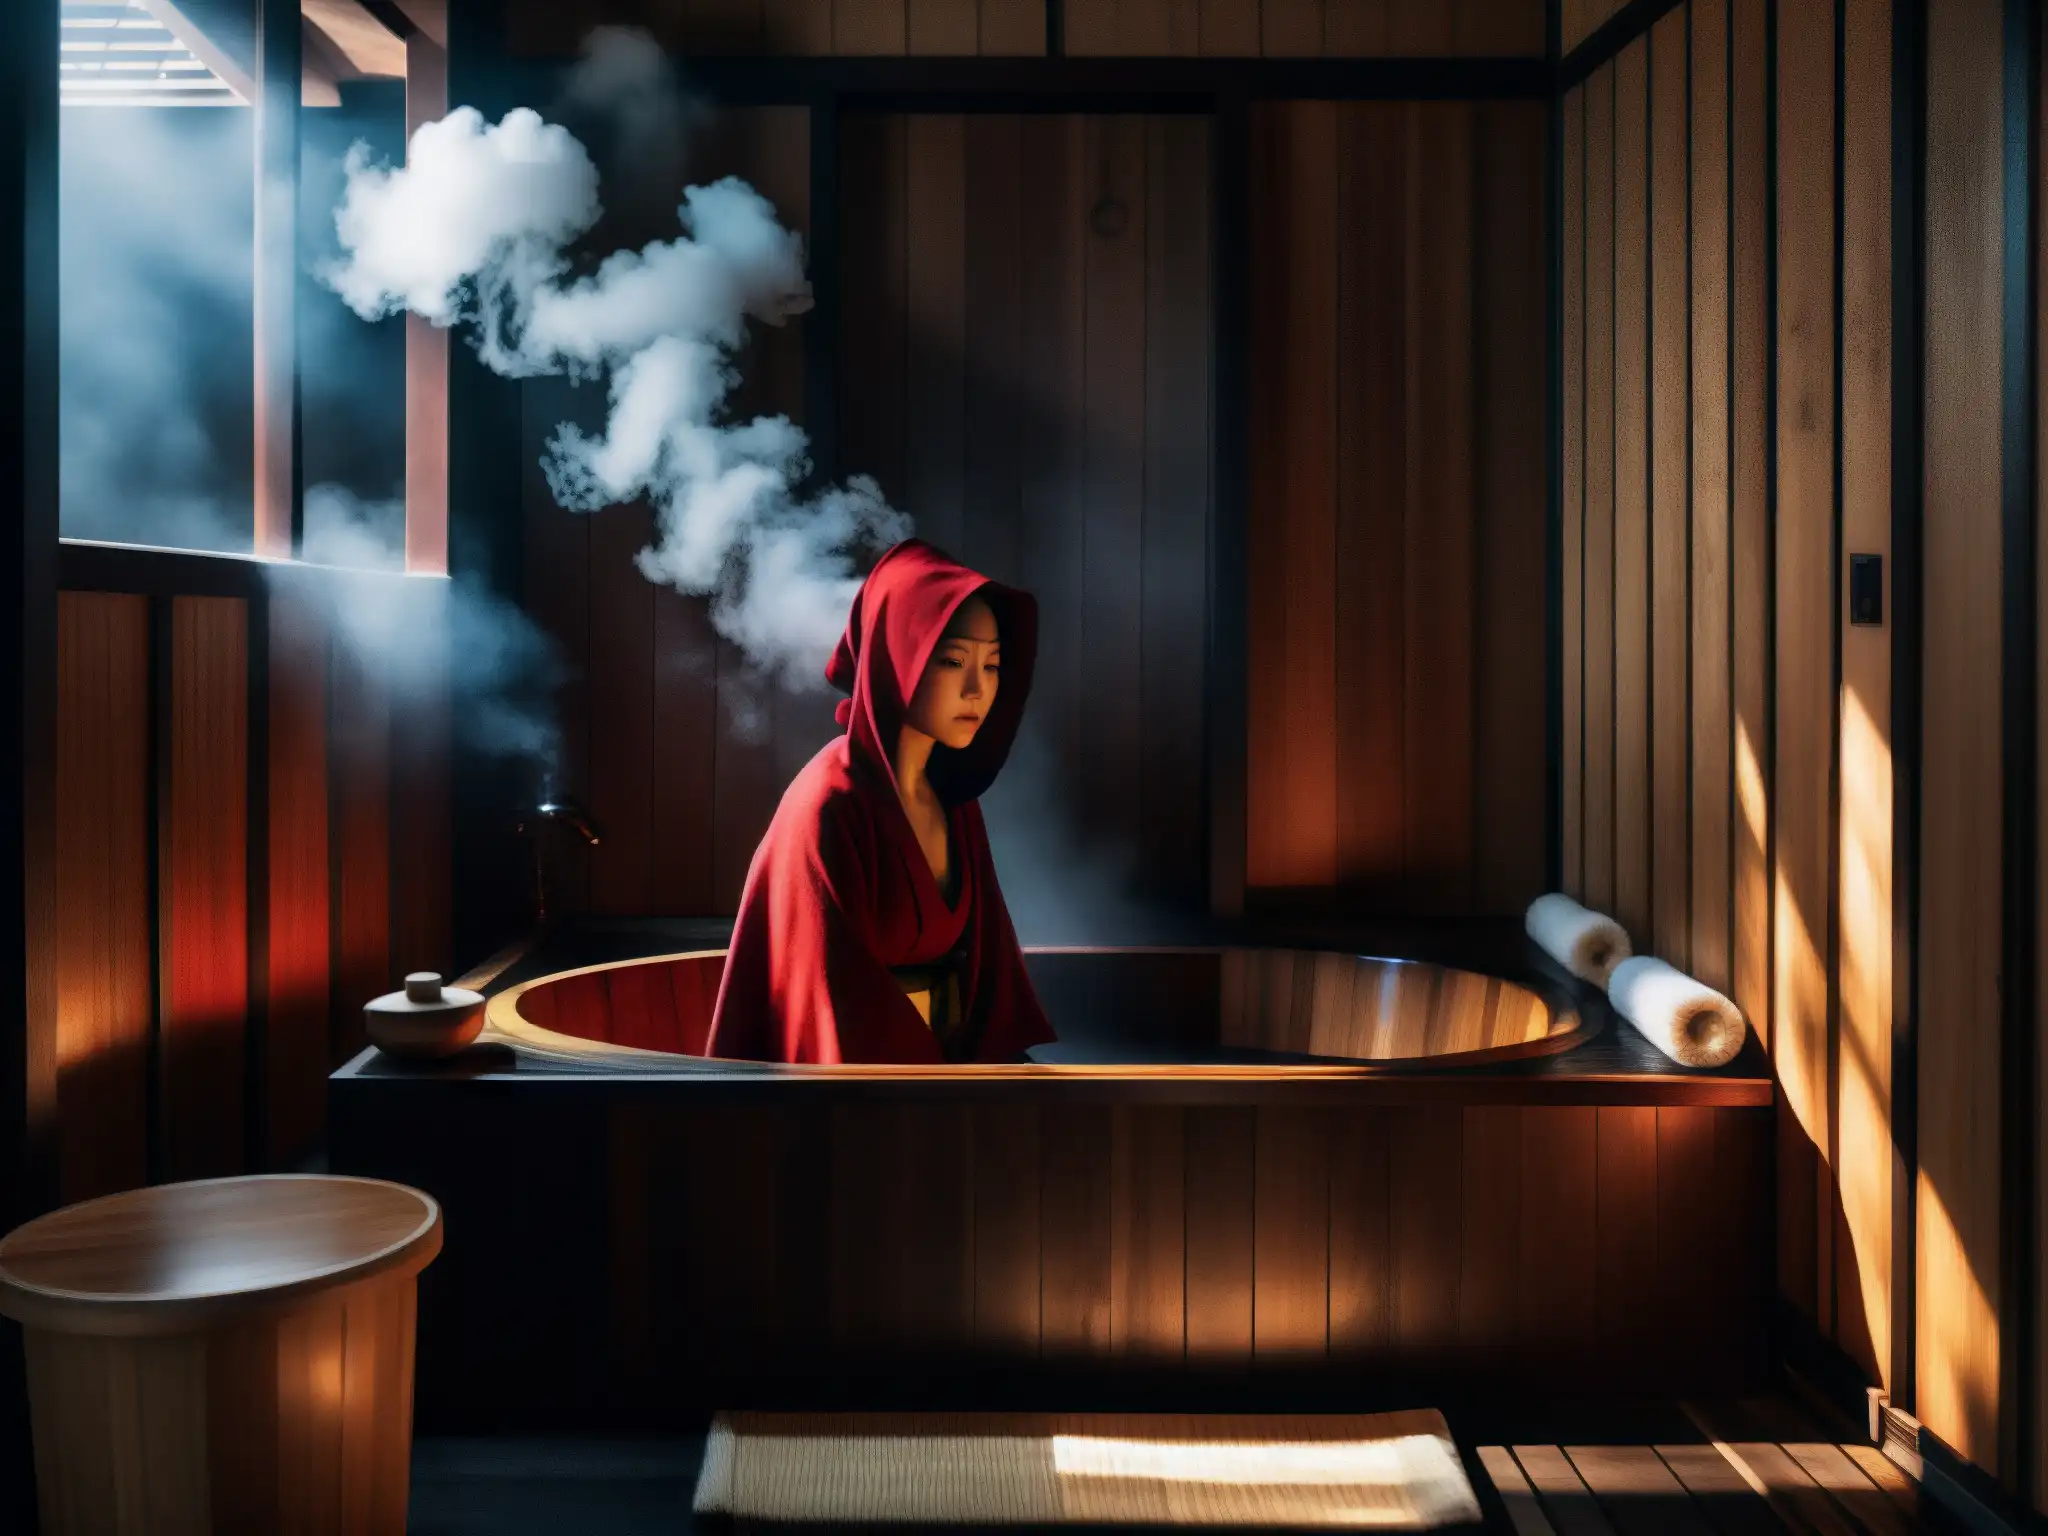 Imagen inquietante de baño japonés con bañeras de madera, vapor y figura misteriosa en capa roja, evocando la leyenda de Aka Manto